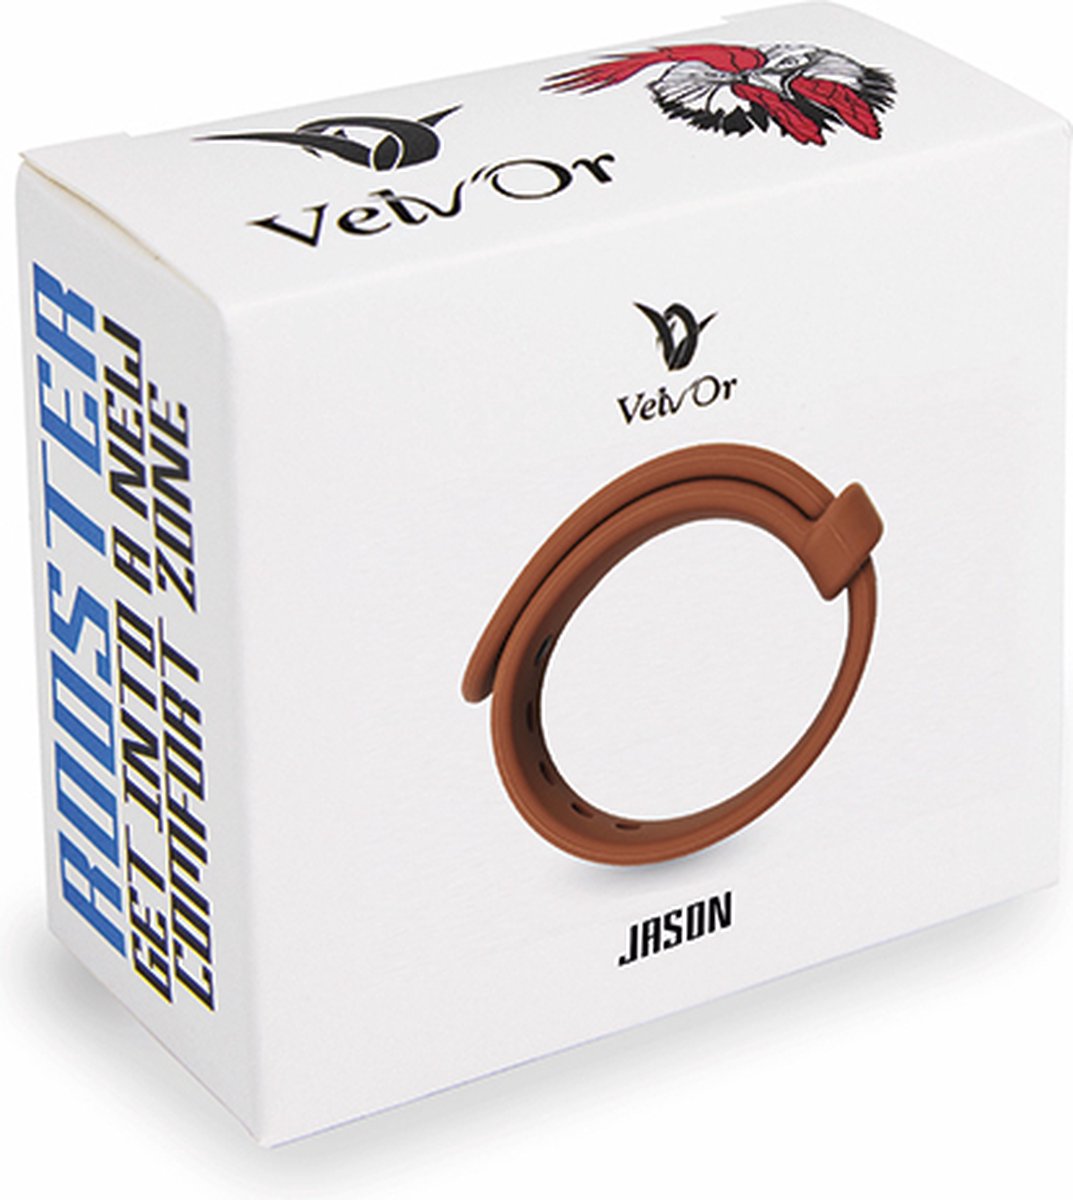 Velv'Or - Rooster Jason Size Adjustable Firm Strap Design Cock Ring Bruin